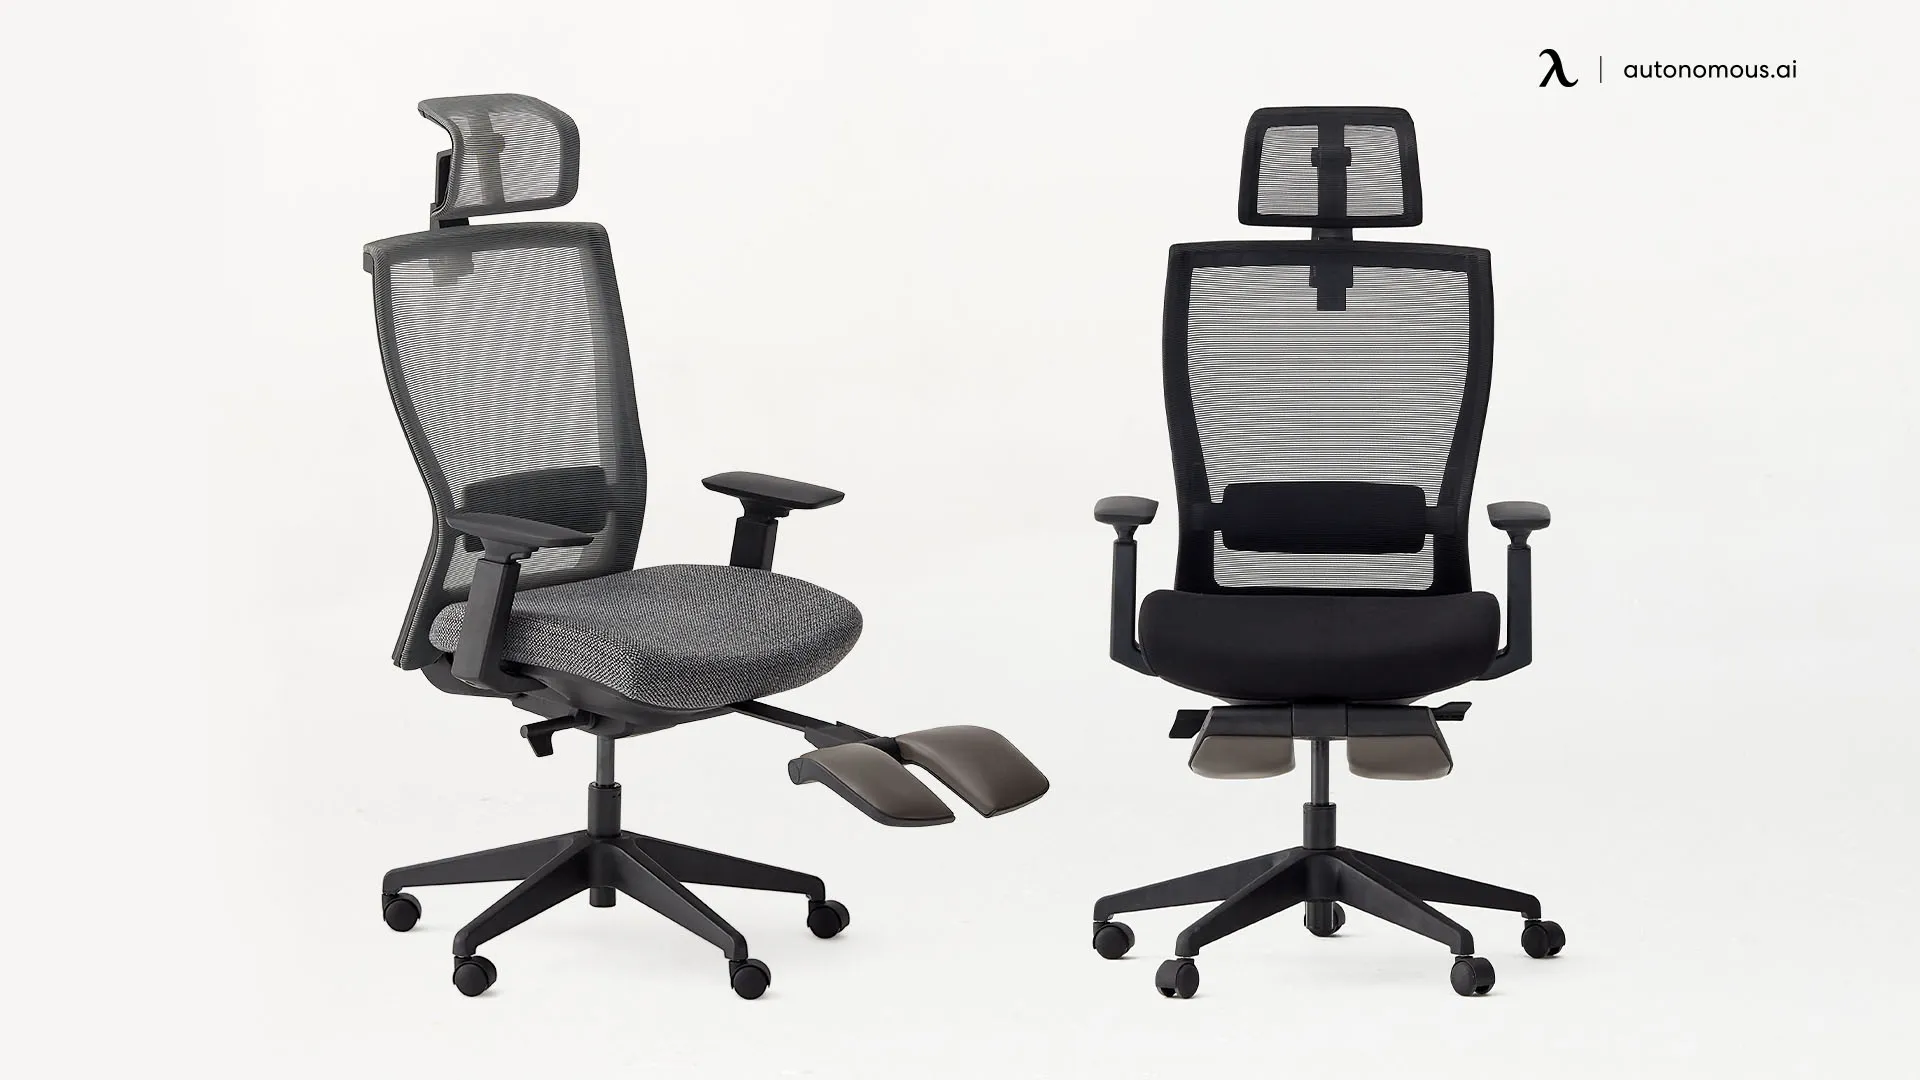 ErgoChair Recline tall desk chair